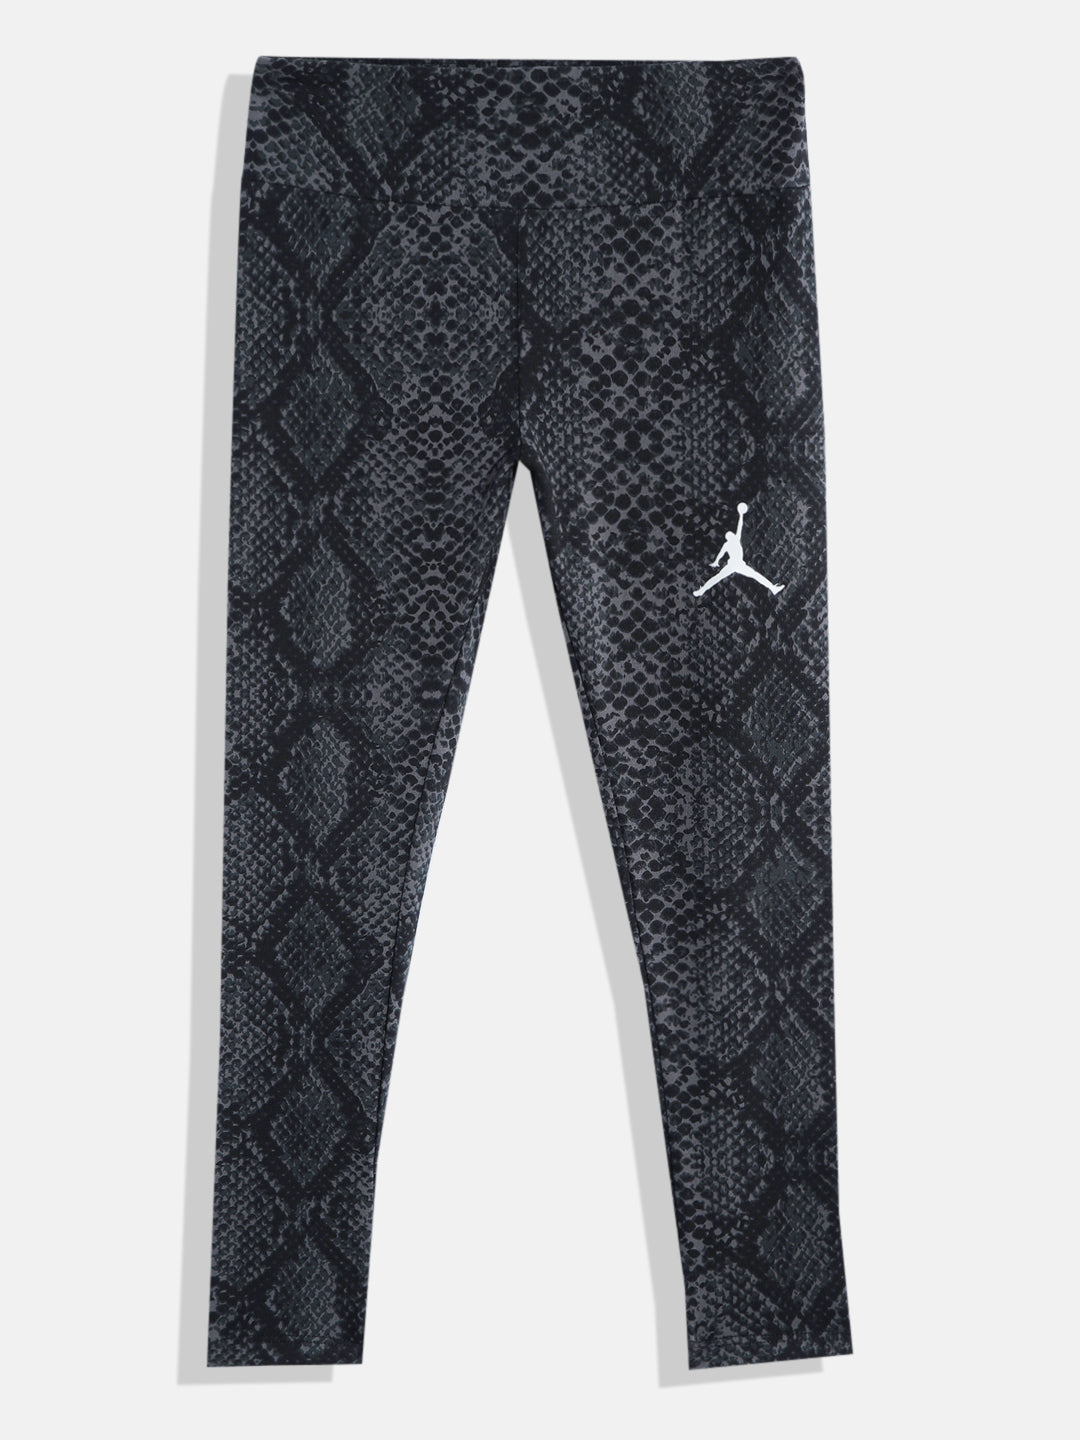 Jordan essential leggings in black